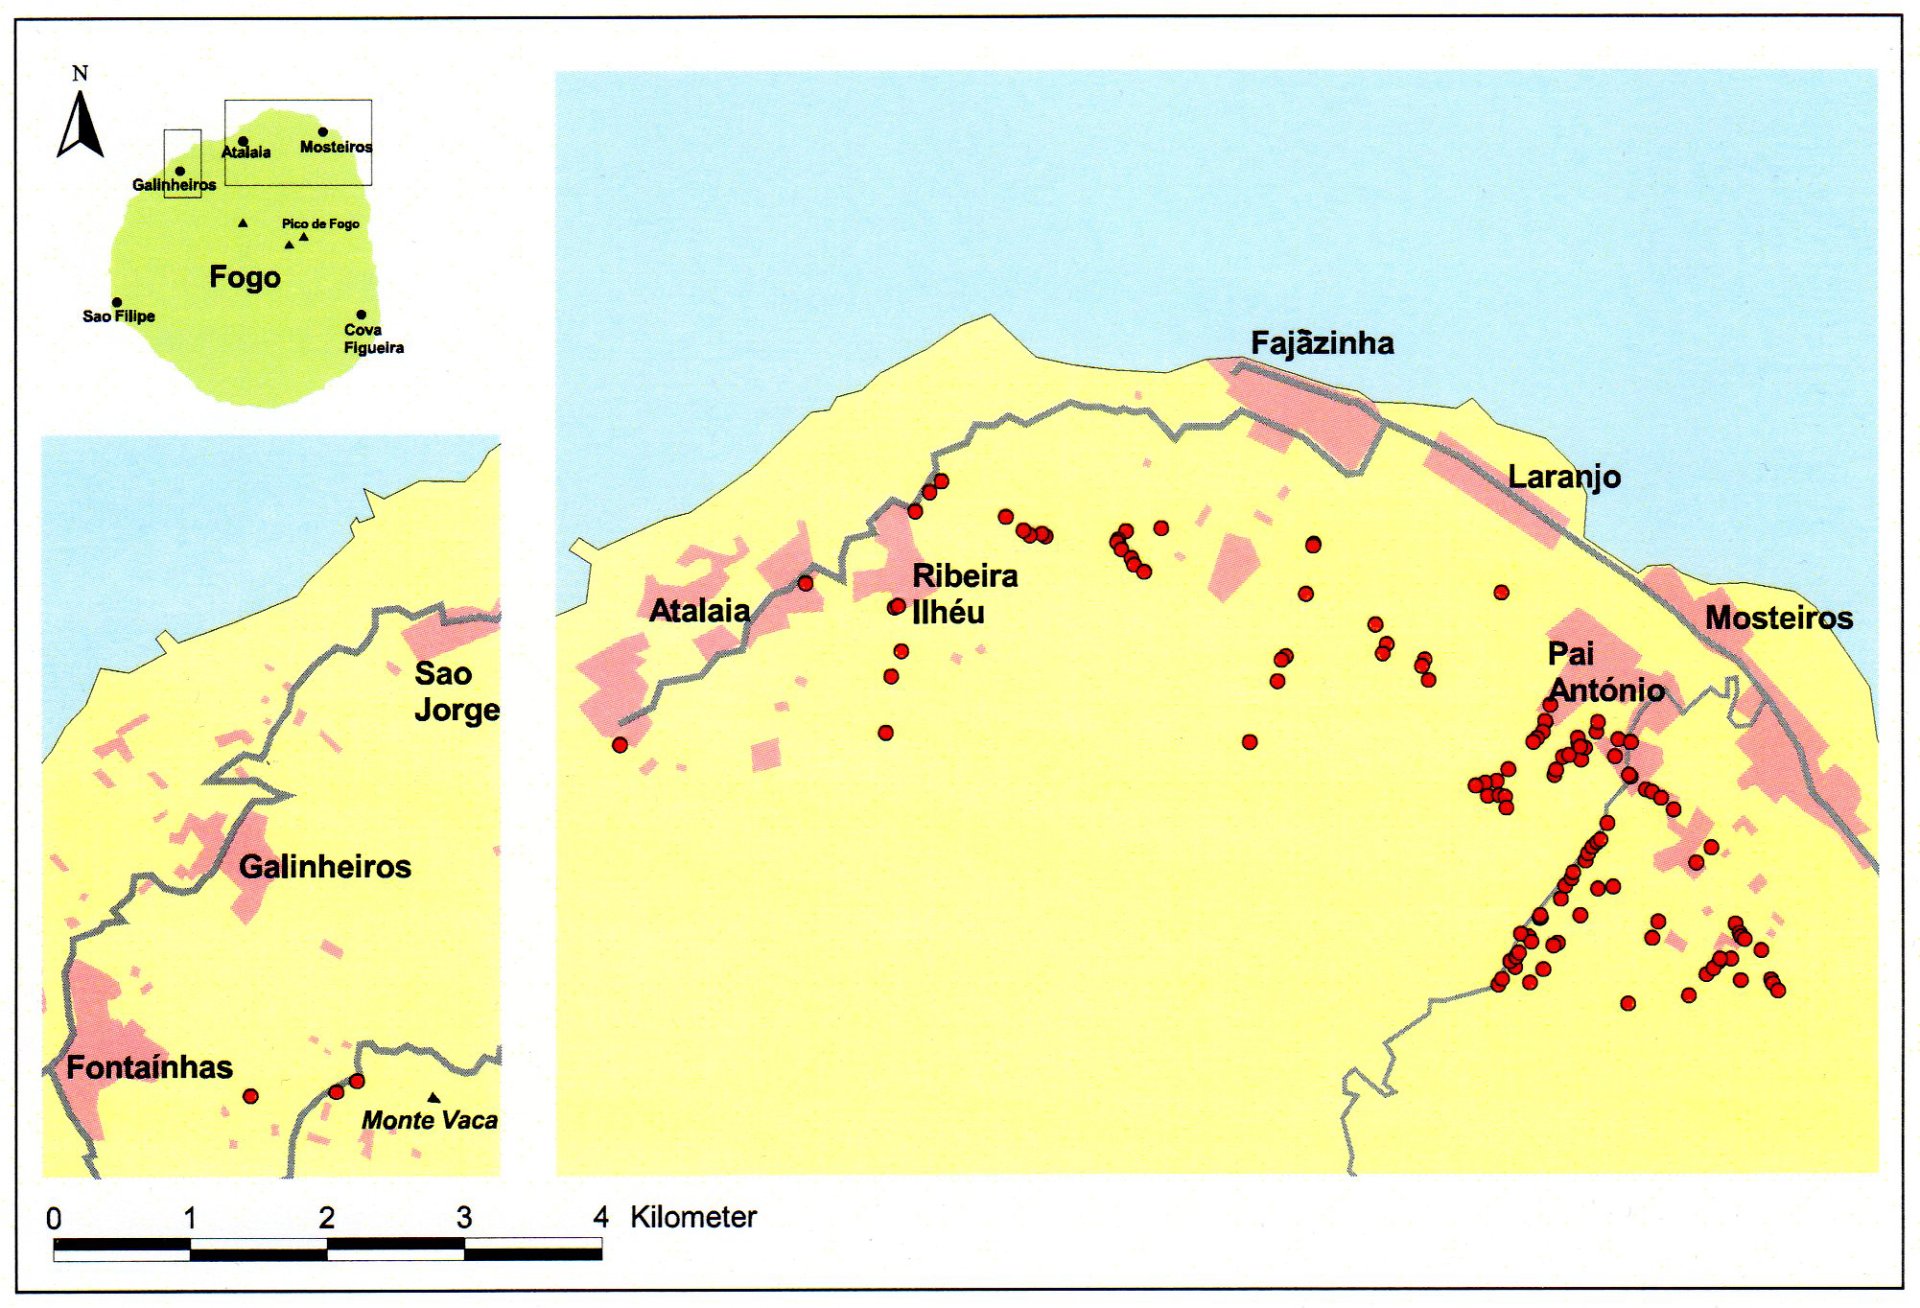 Obr. 3. Mapa stanovišť rákosníka kapverdského na ostrově Fogo. Převzato z: Hering, J., Fuchs, E.: The Cape Verde Warbler on Fogo. 2009